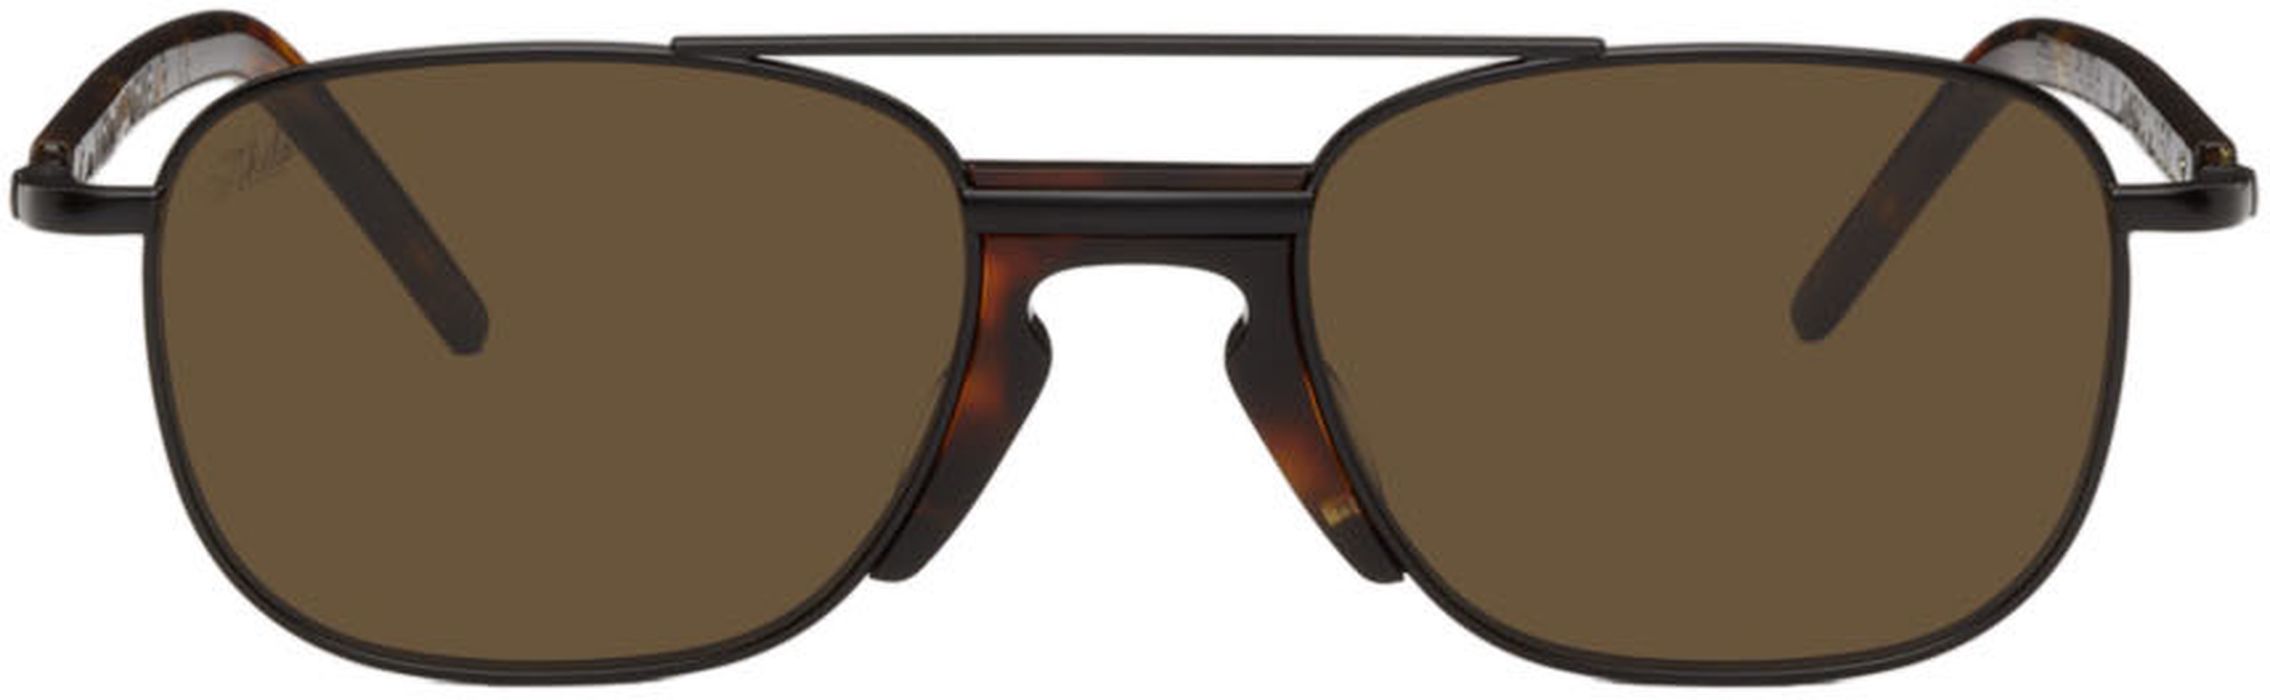 Akila Tortoiseshell Task Force Sunglasses